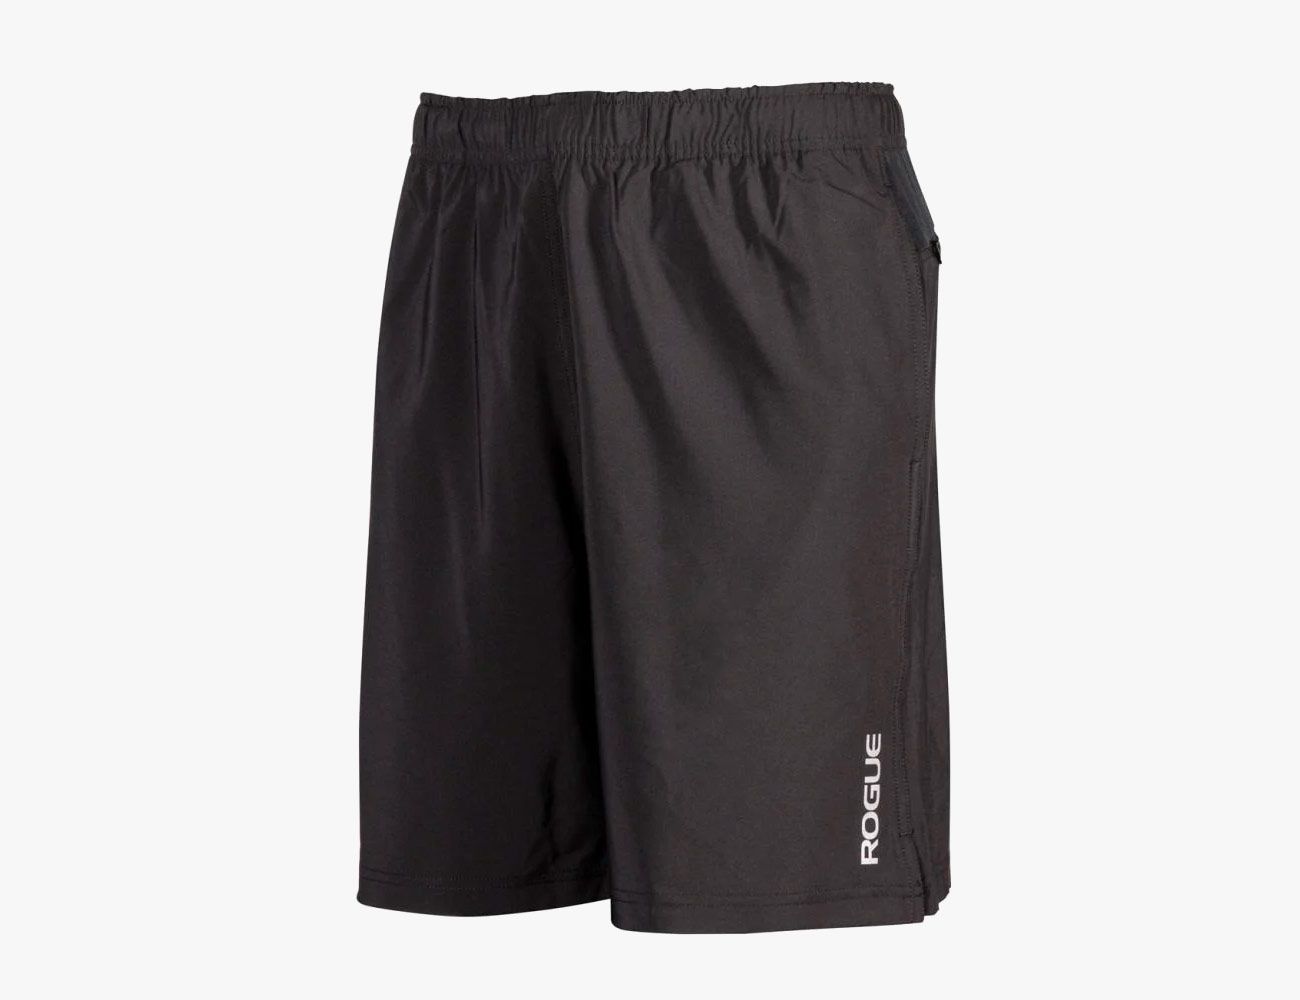 adidas crossfit shorts